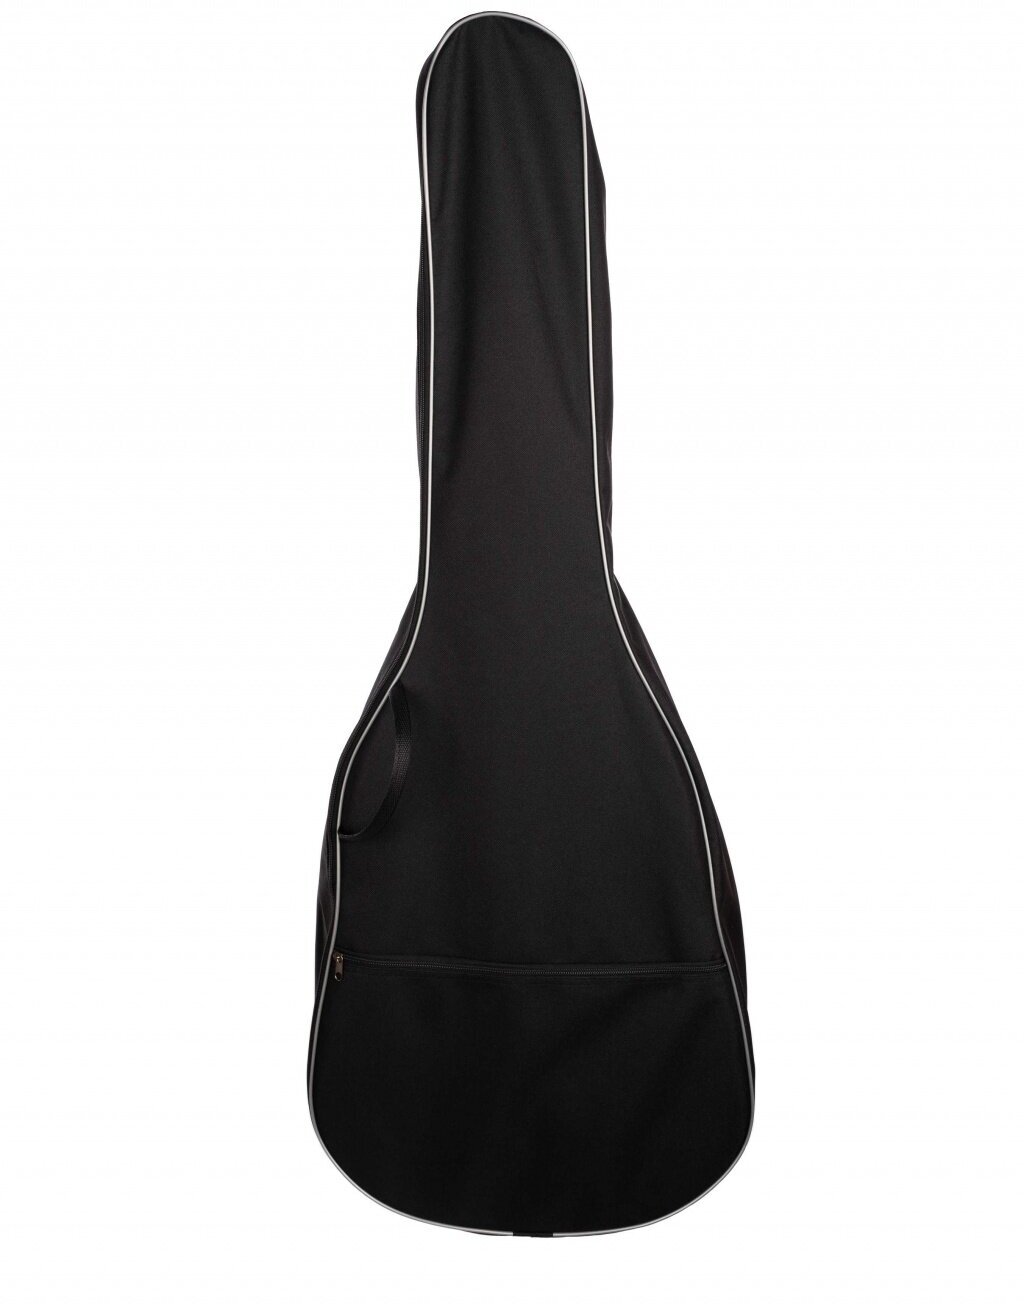 MLDG-11 Чехол для акустической гитары дредноут 4/4 черный Lutner